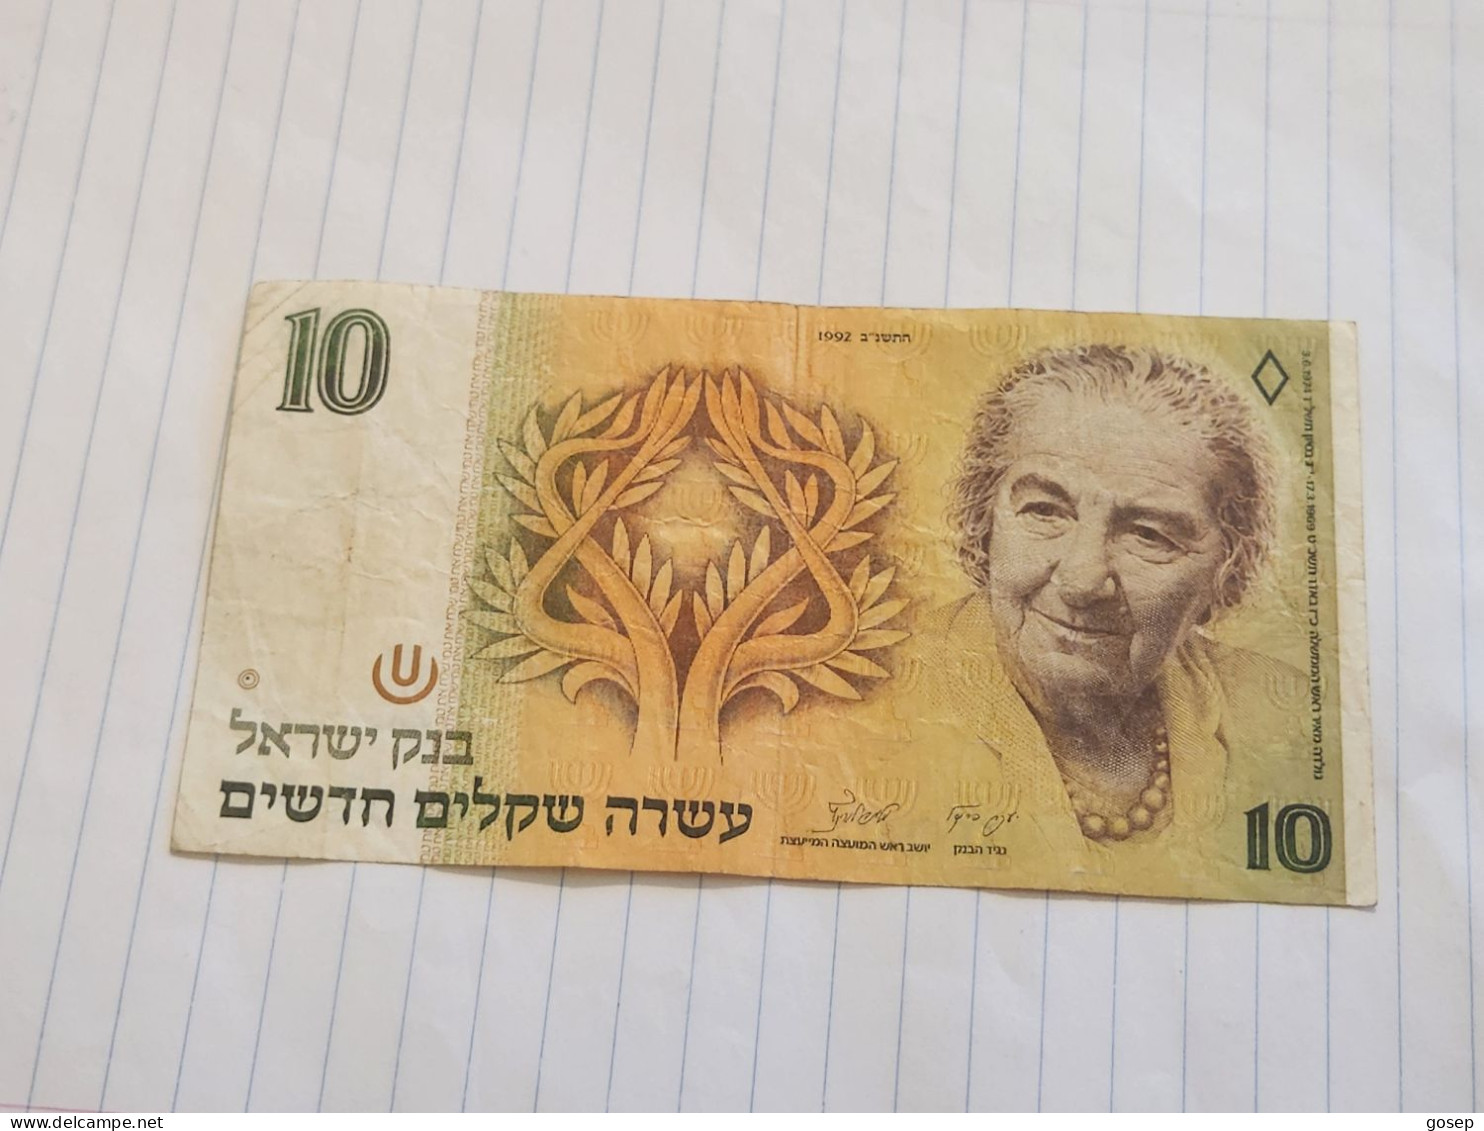 Israel-10 NEW SHEQELIM-GOLDA MEIR-(1992)(541)(LORINCZ/FRENKEL)-(0950877603)-ritr Pen-used-bank Note - Israele